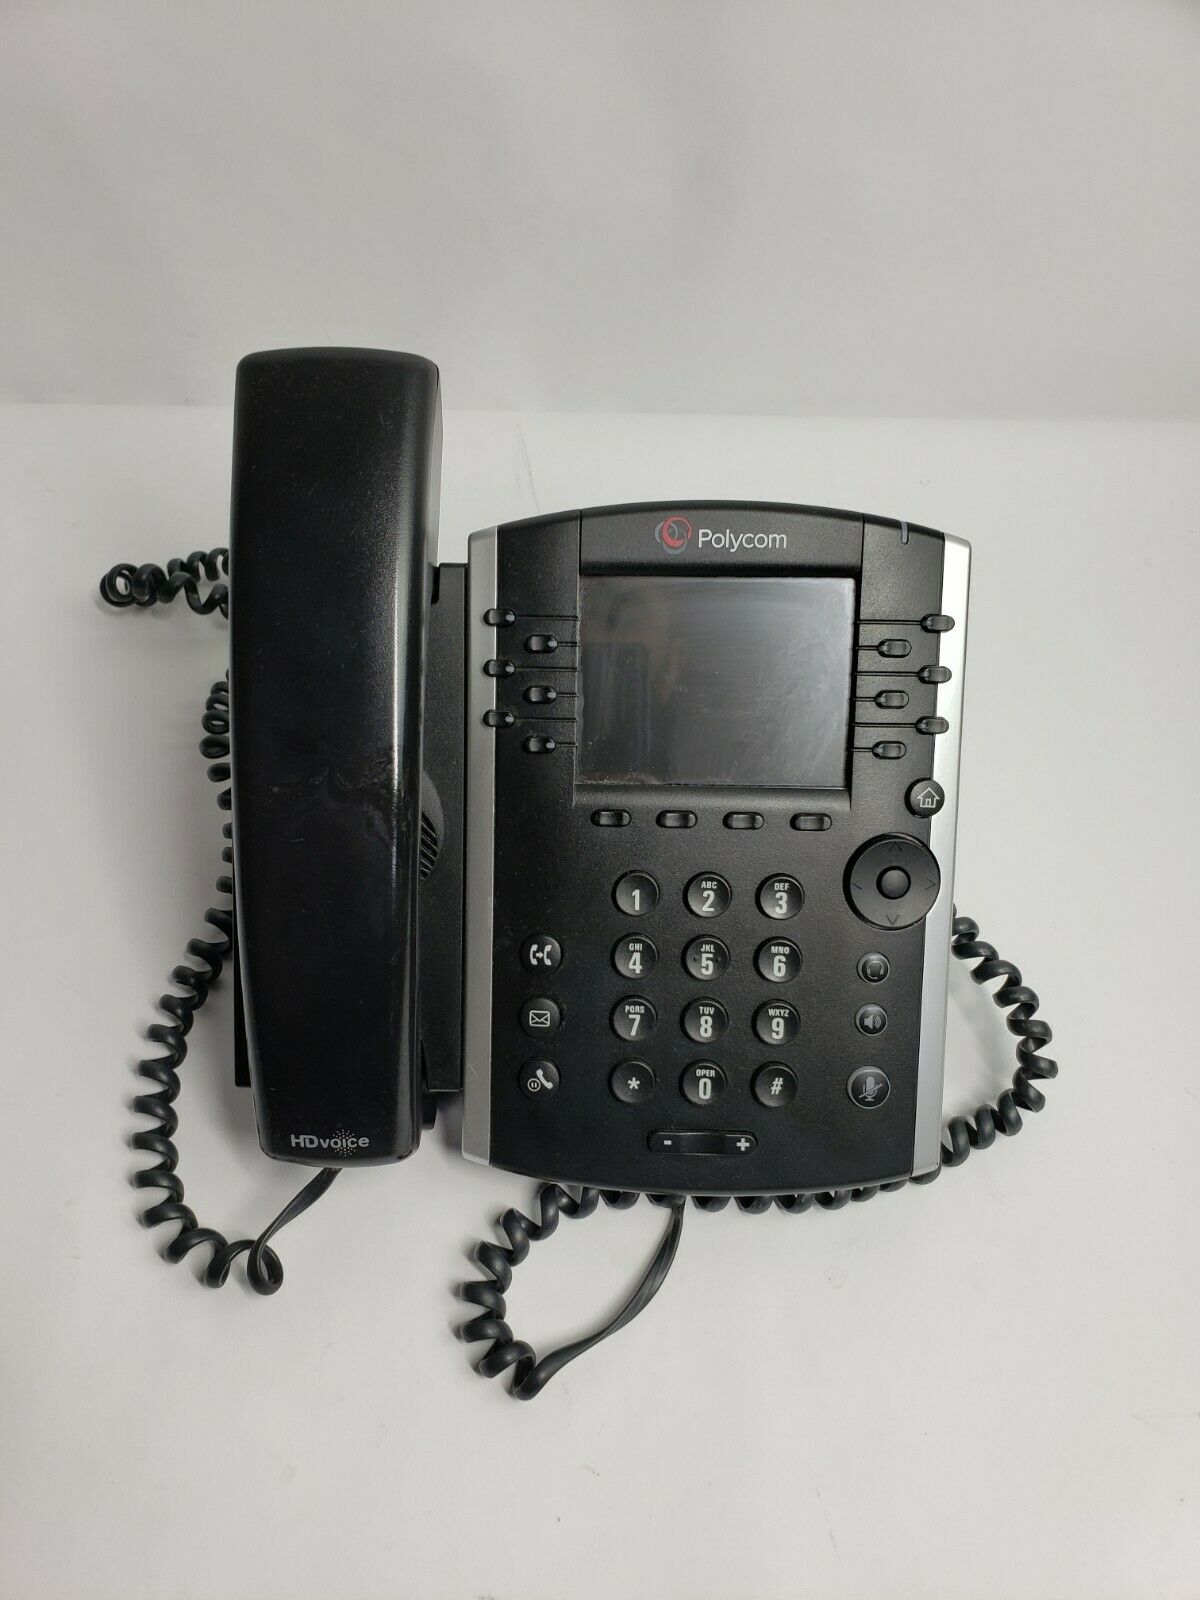 Polycom VVX 410 Vvx410 2201-46162-001 Phone VoIP IP Gigabit for sale online 